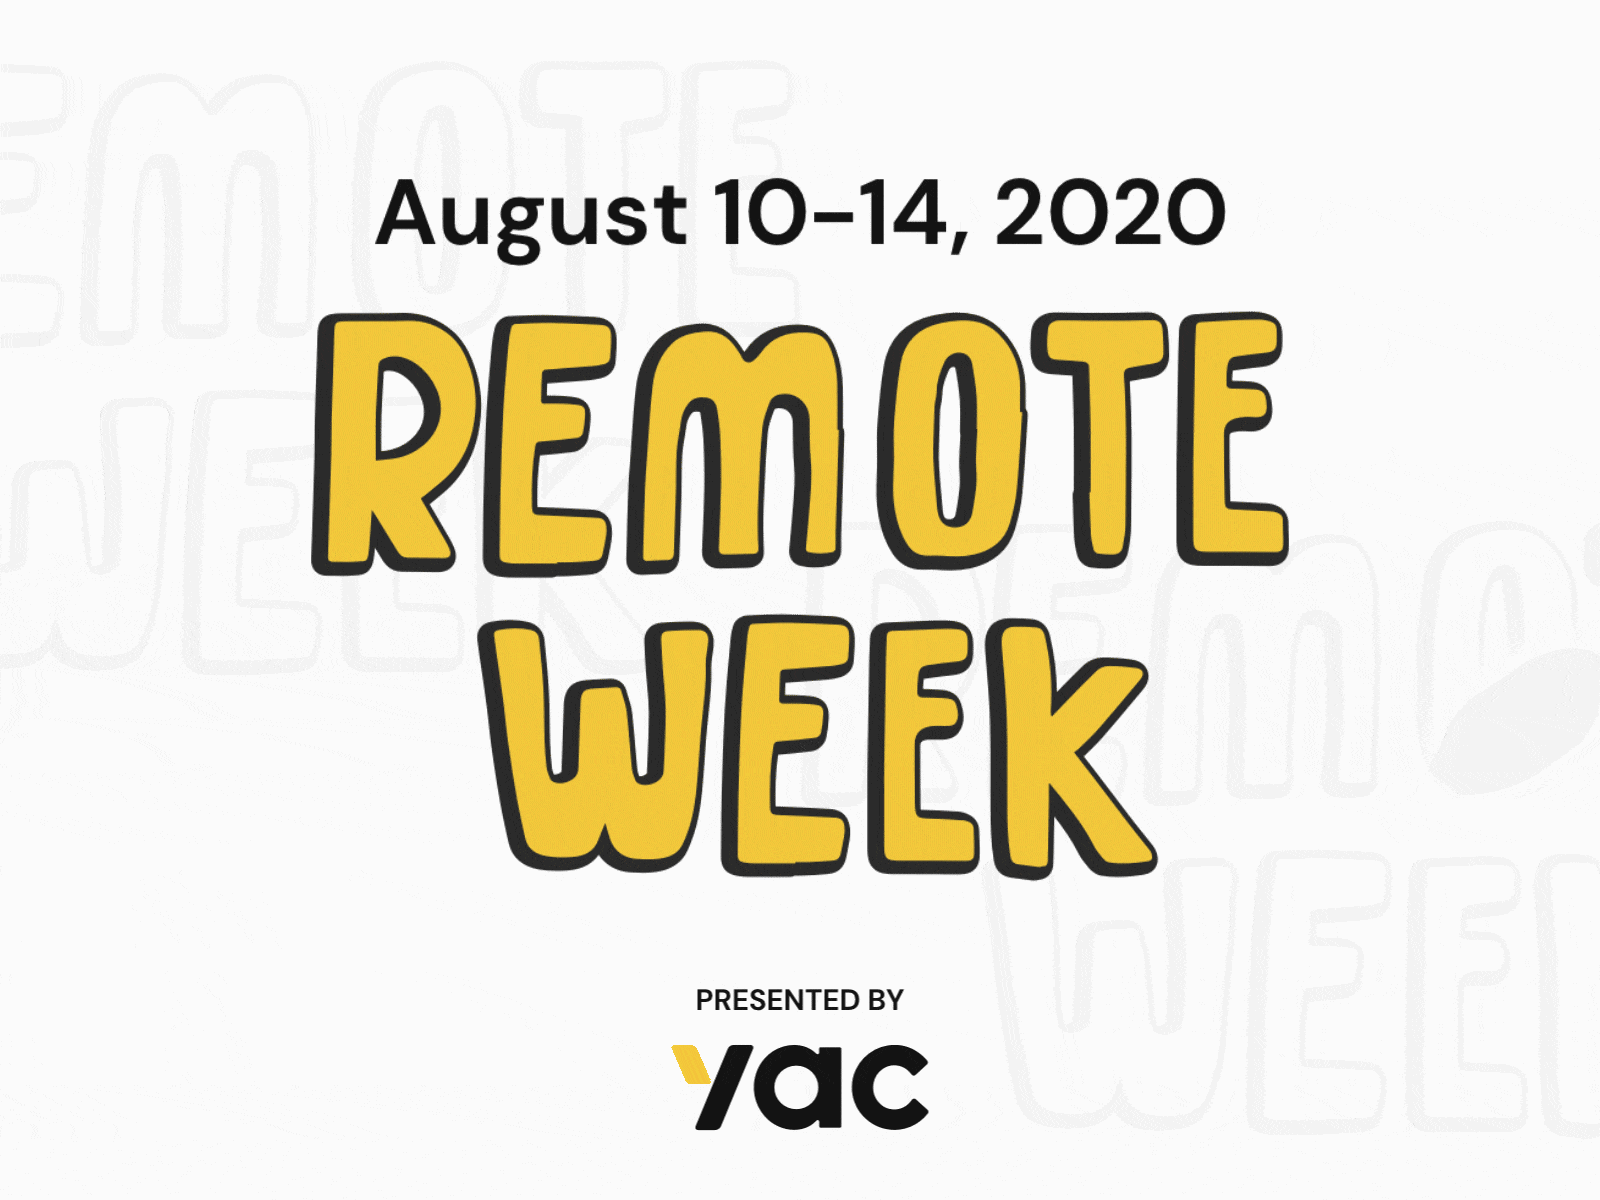 Remote Week August 10-14